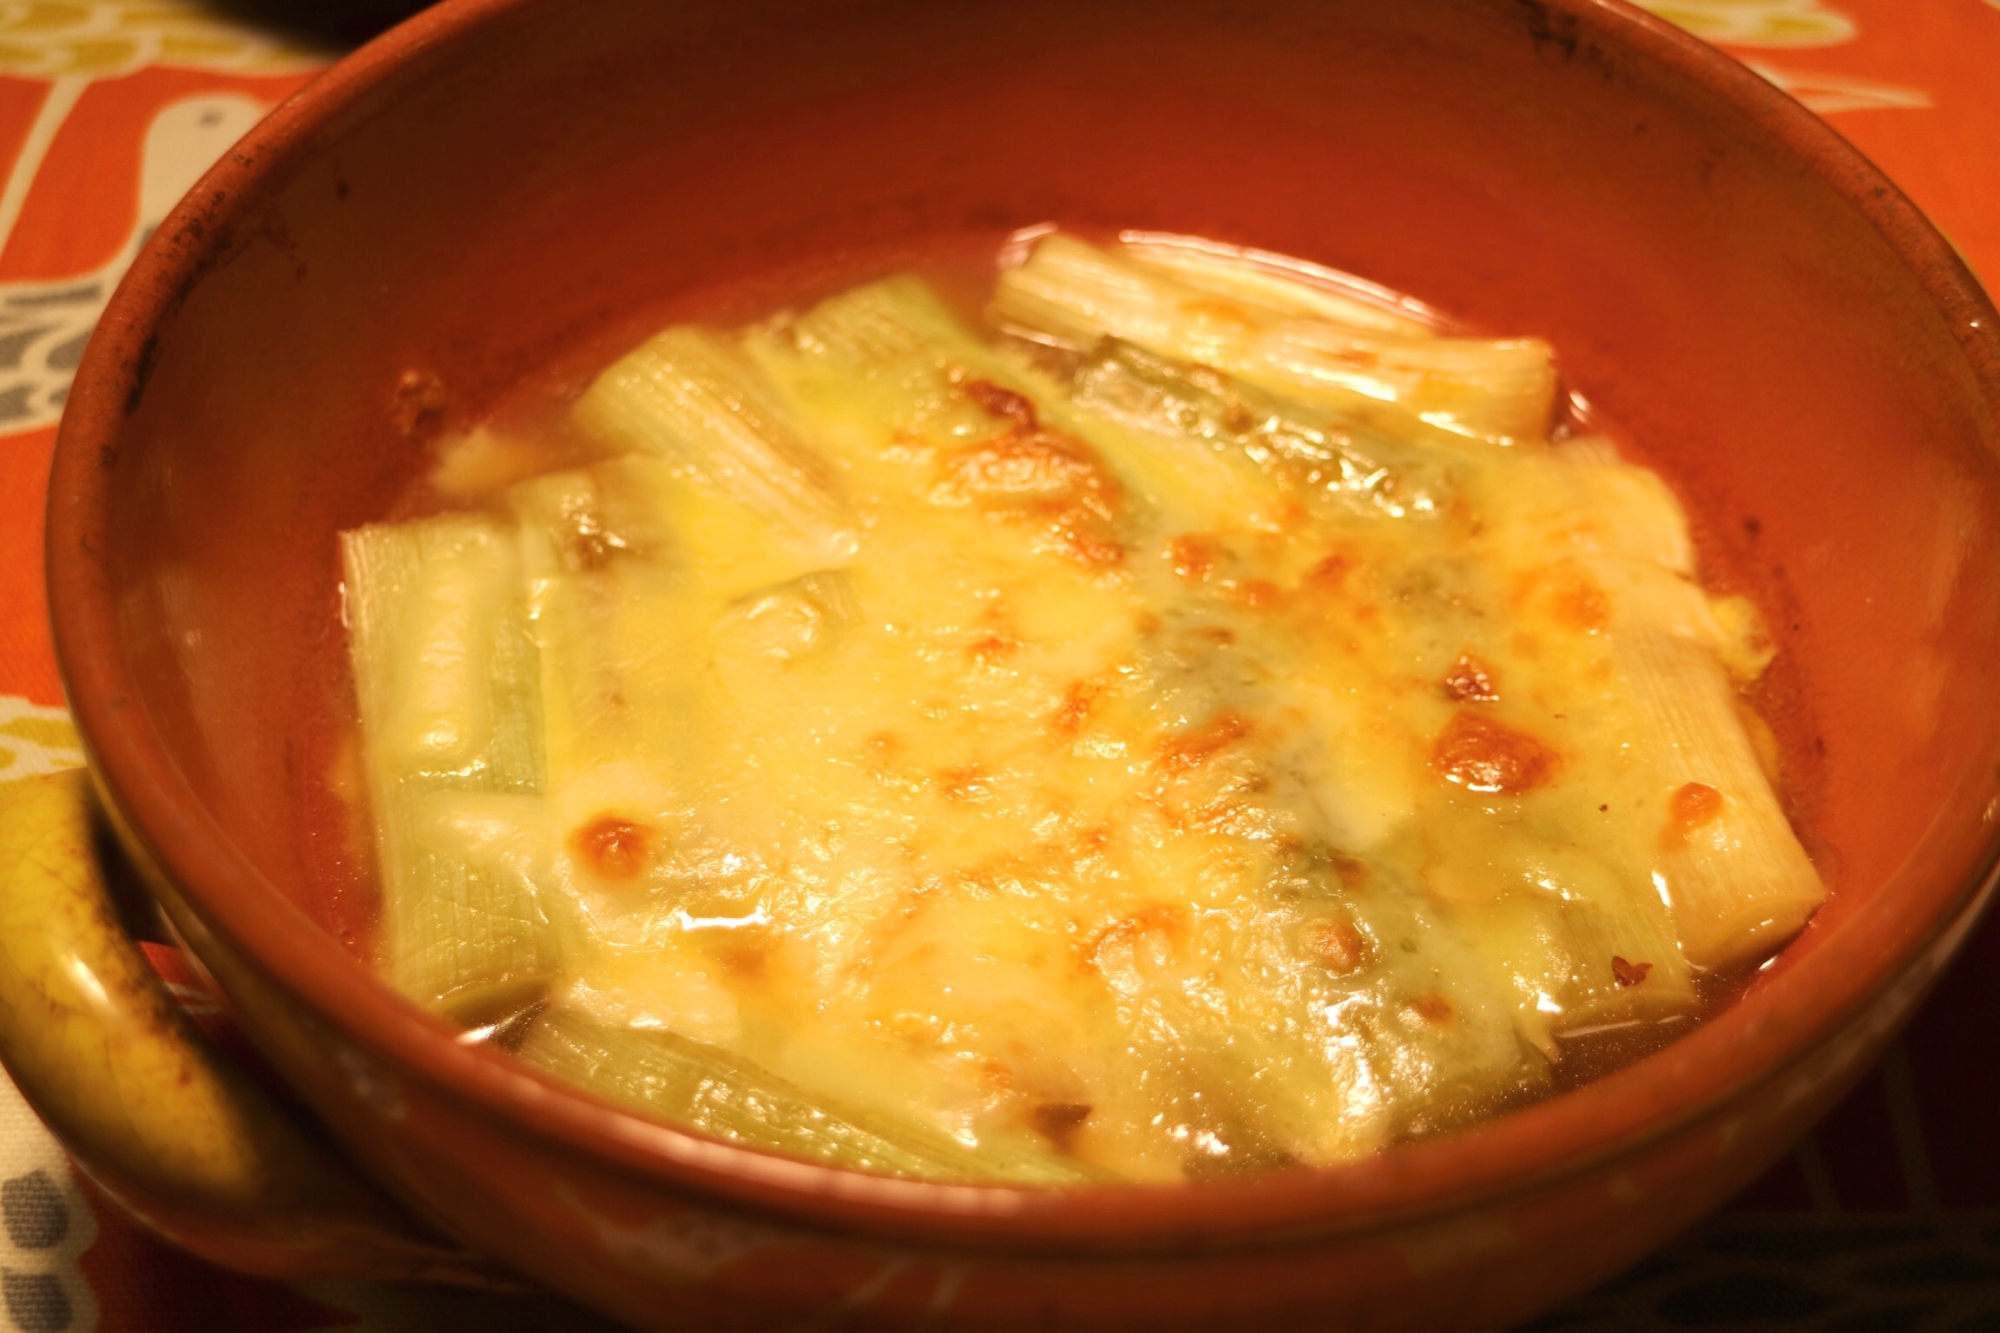 コンソメスープで☆ネギのチーズ焼き